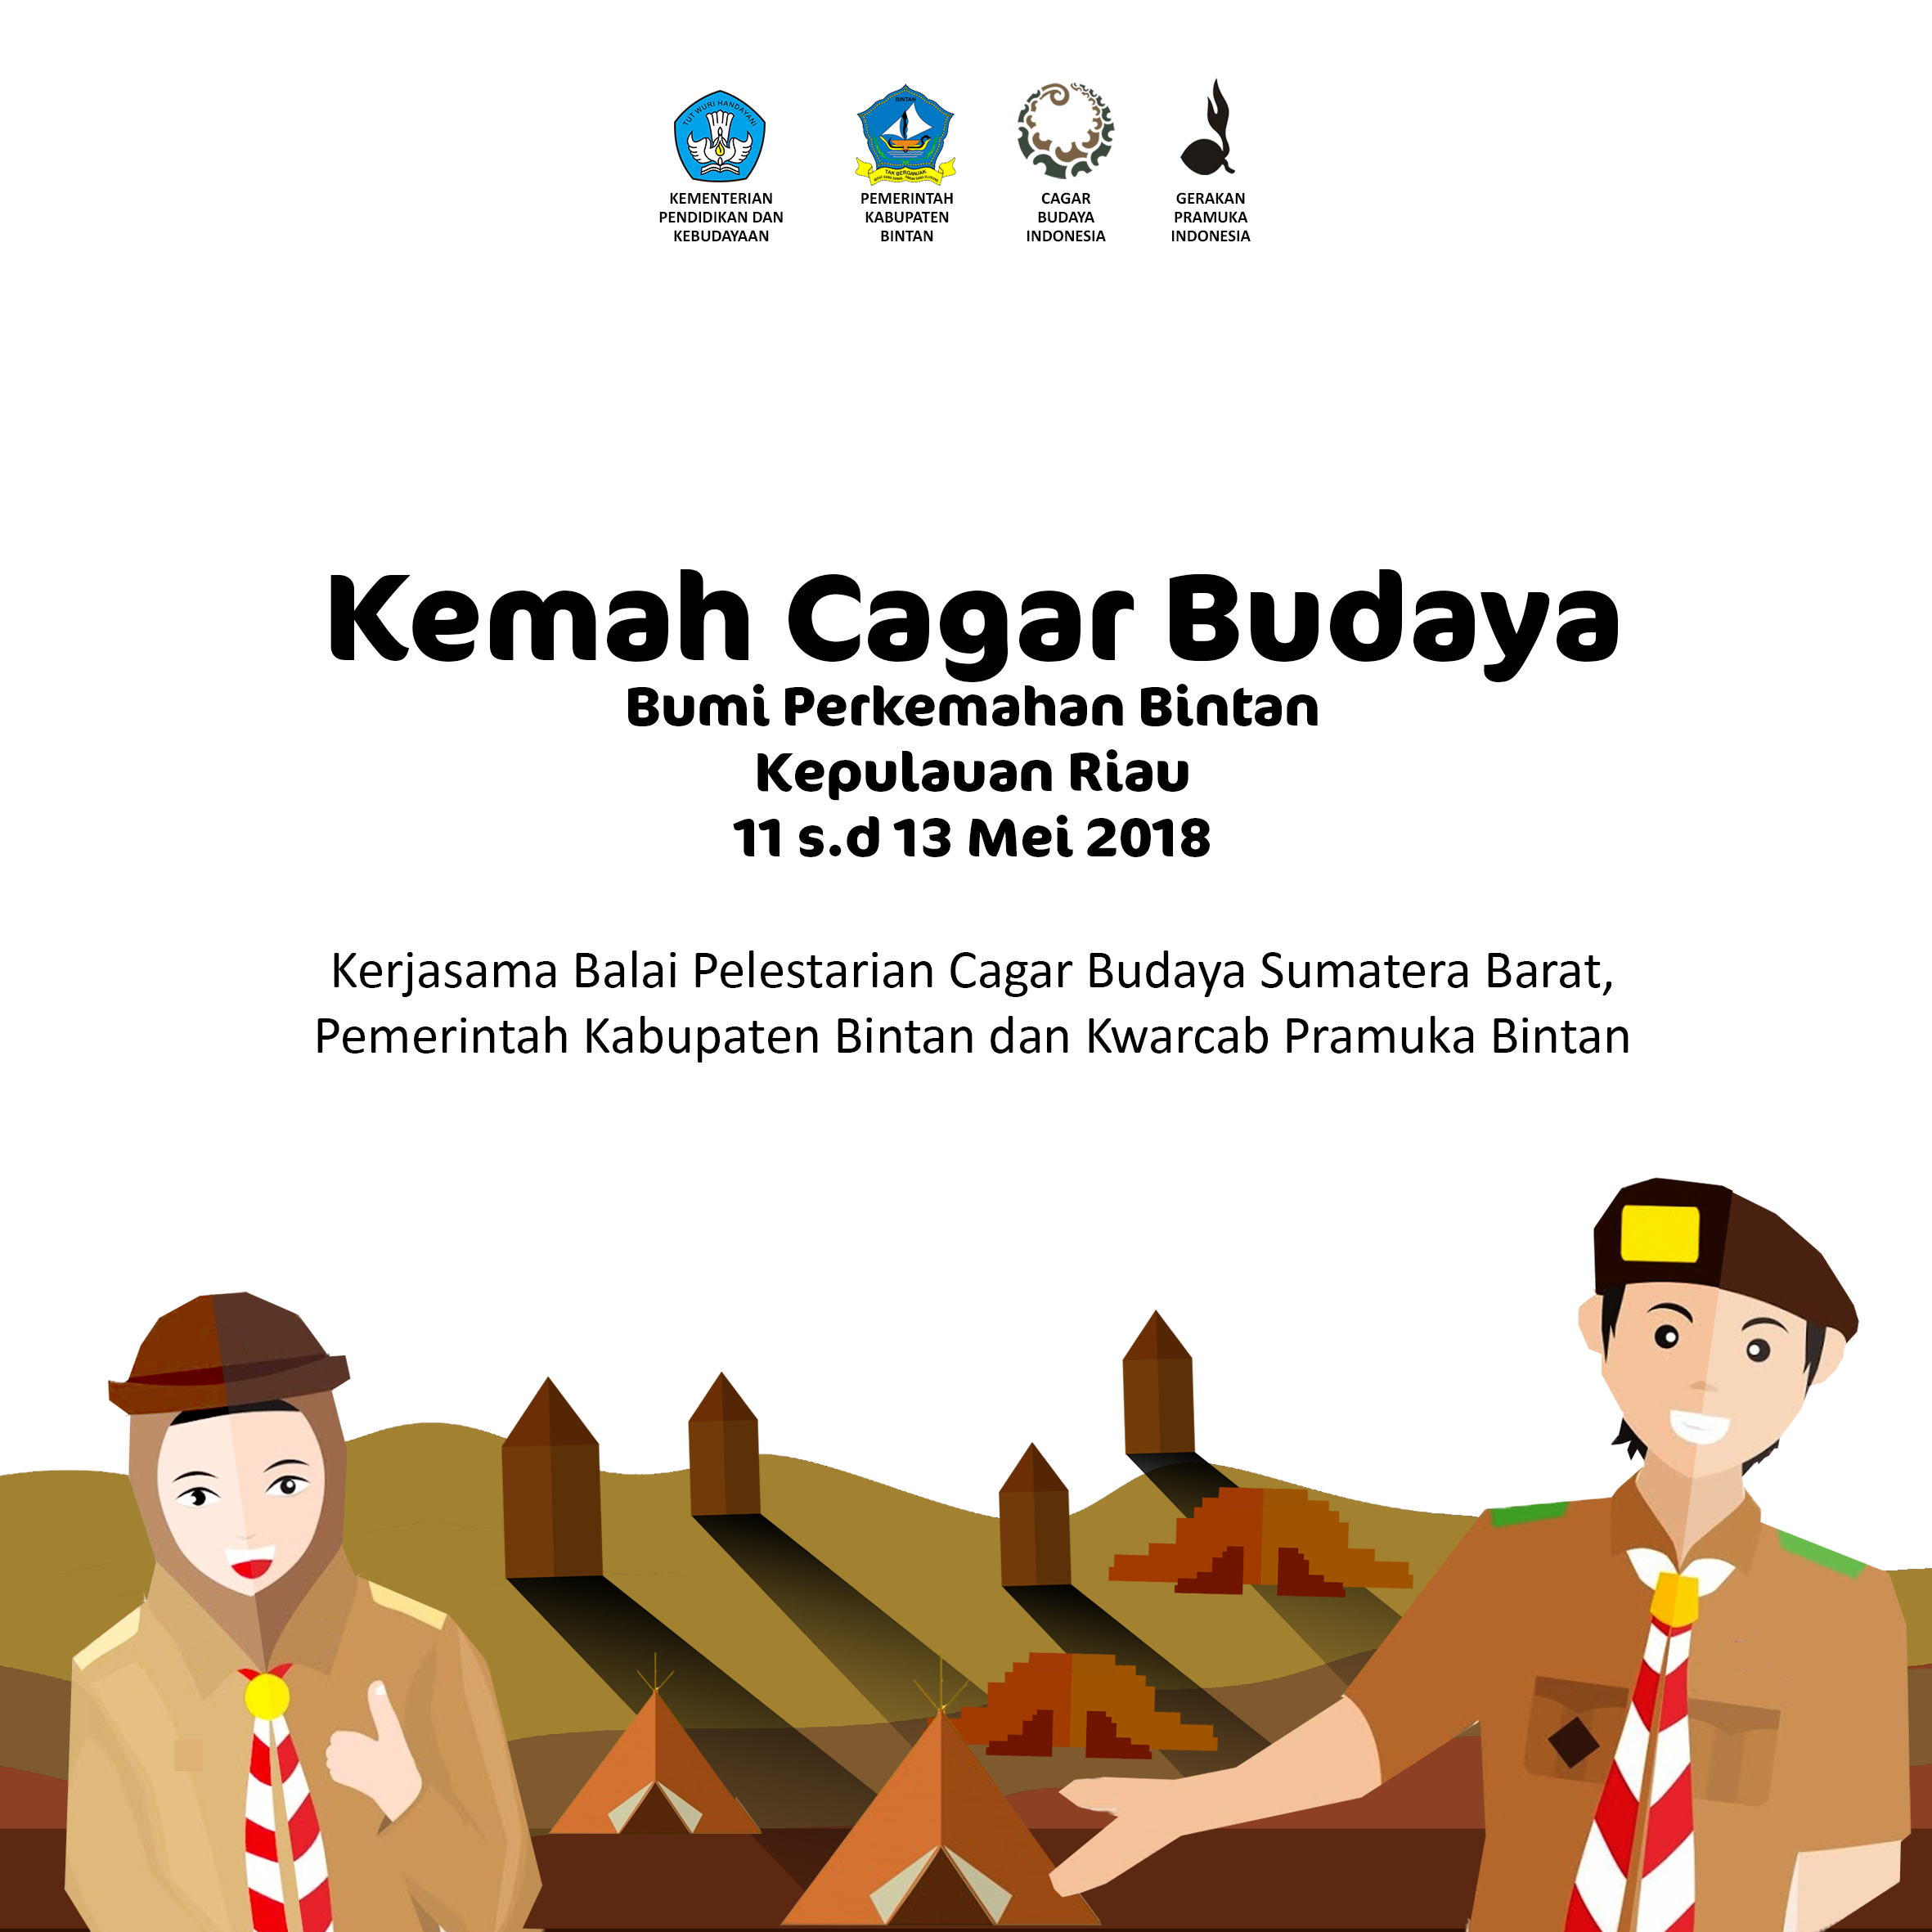 Kemah Cagar Budaya akan dilaksanakan di Bintan Kepulauan Riau